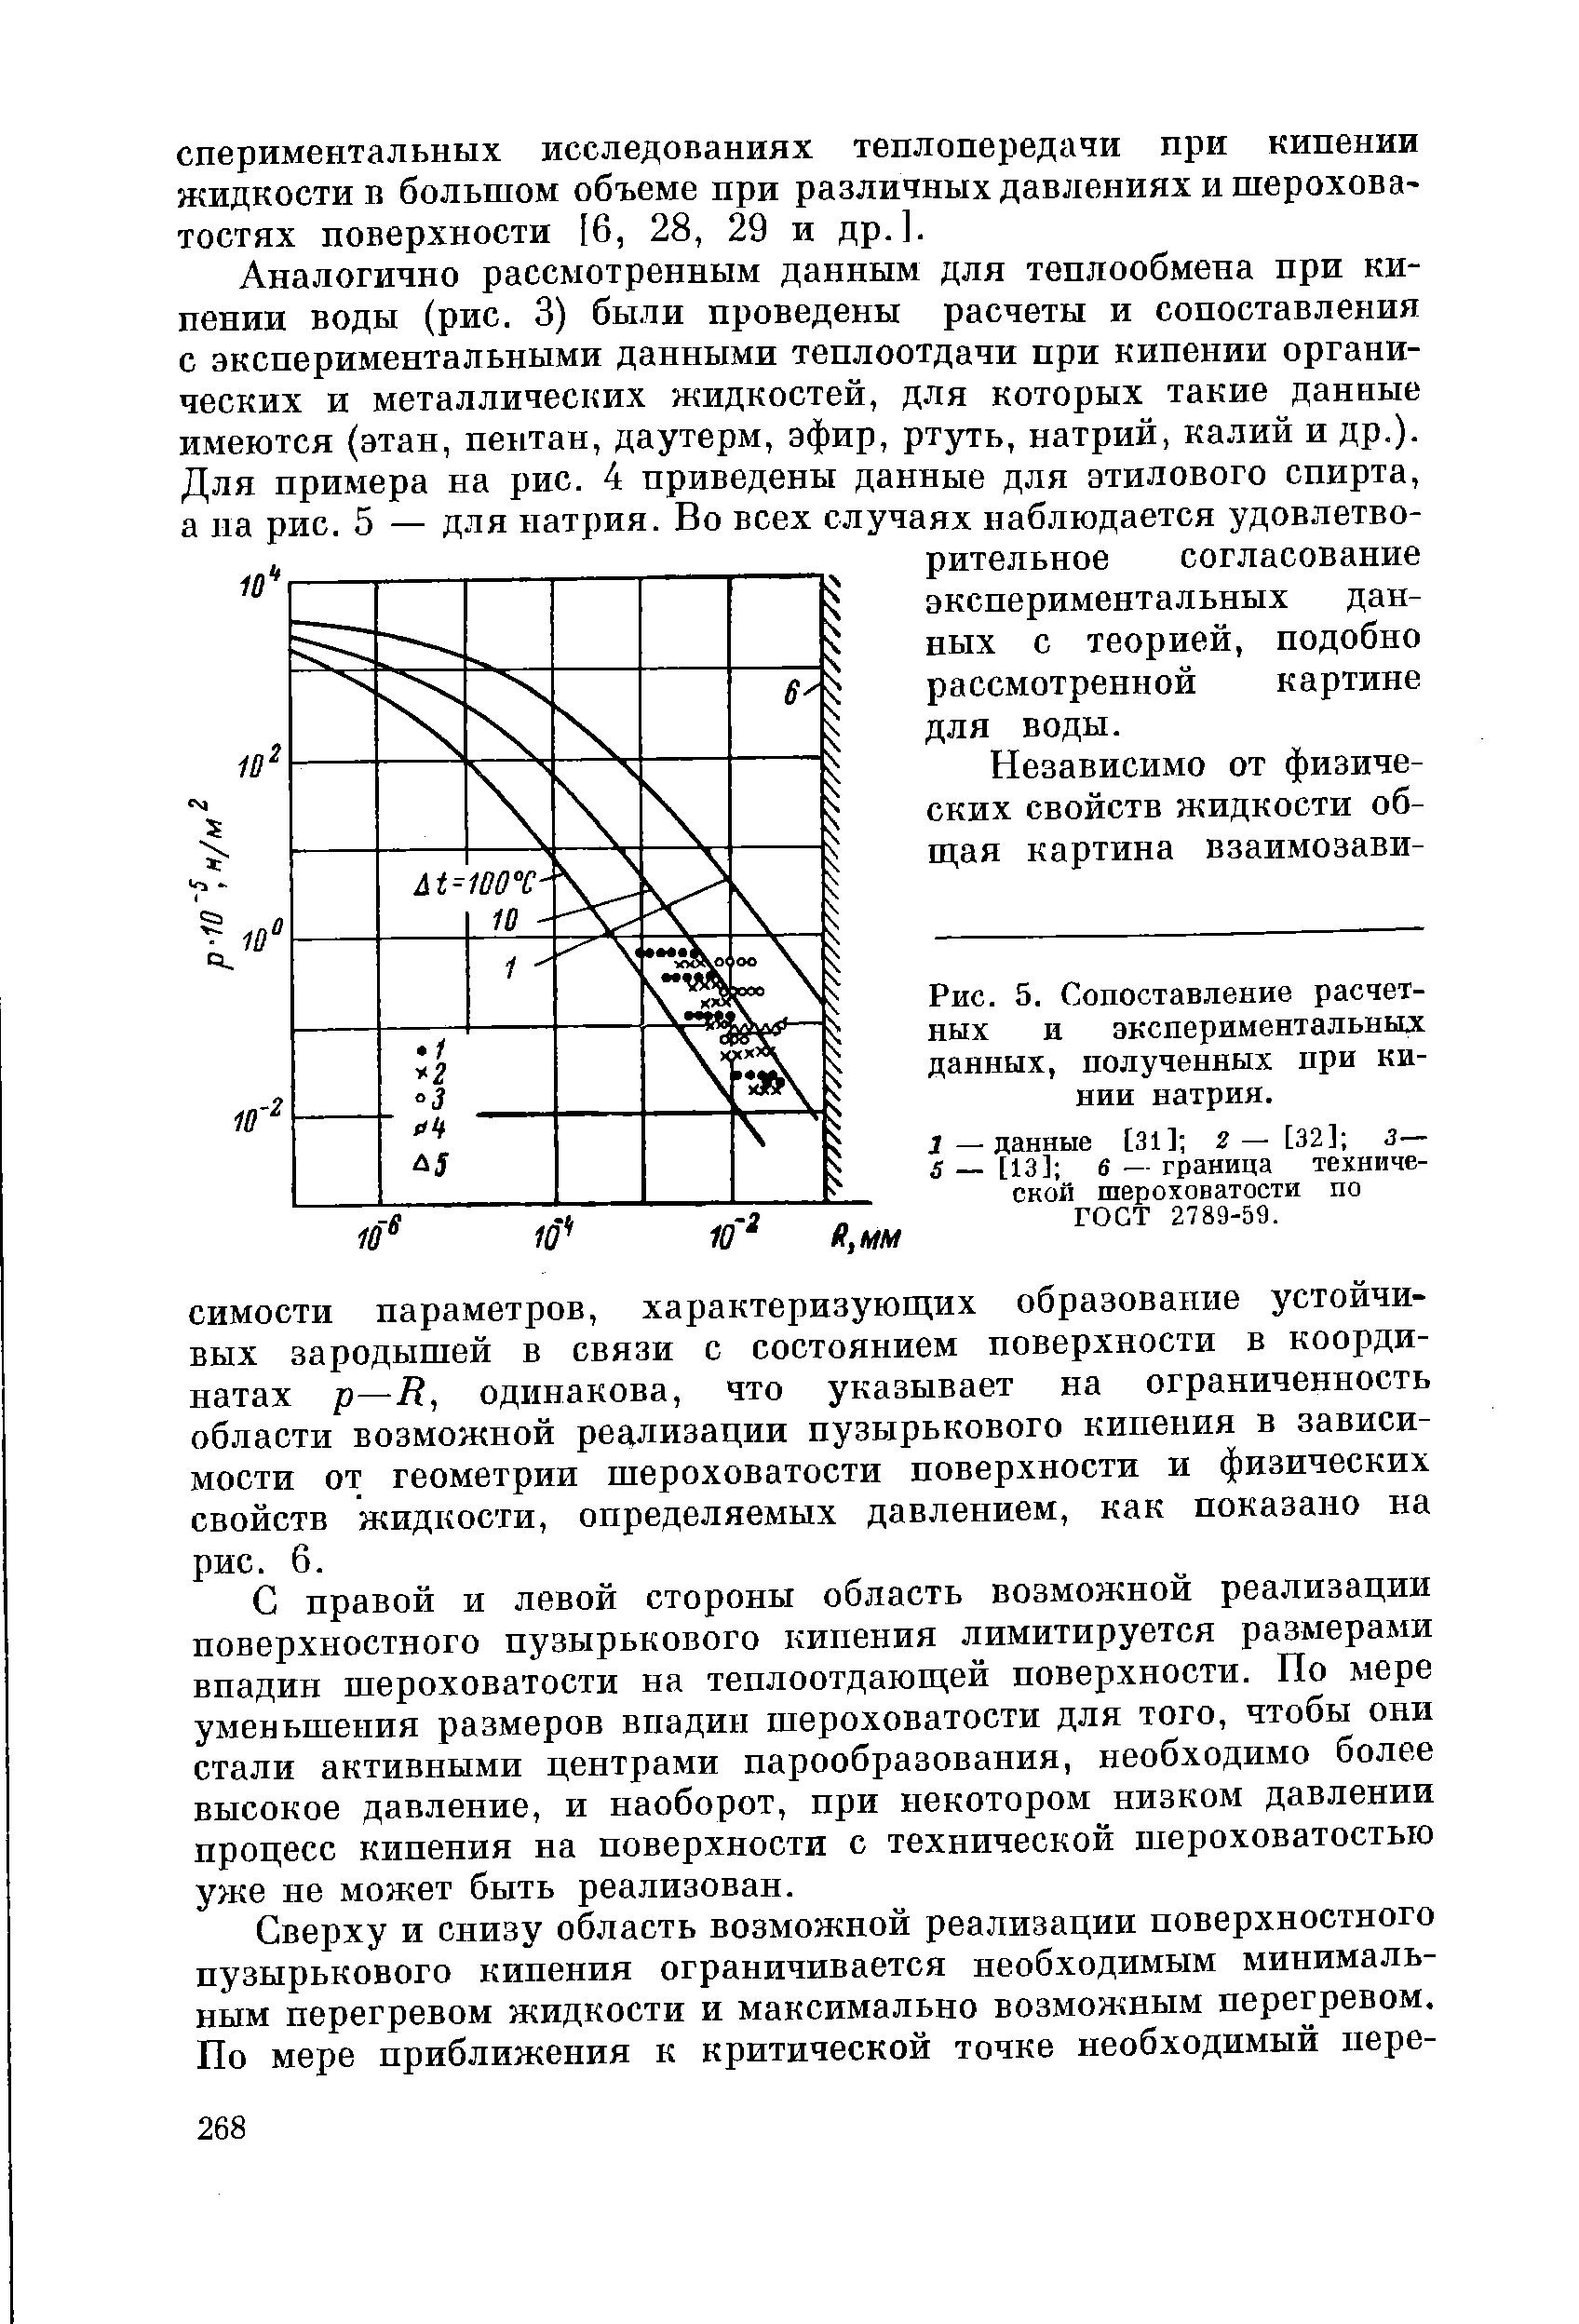 Рис. 5. Сопоставление расчетных и экспериментальных данных, полученных при пинии натрия.
